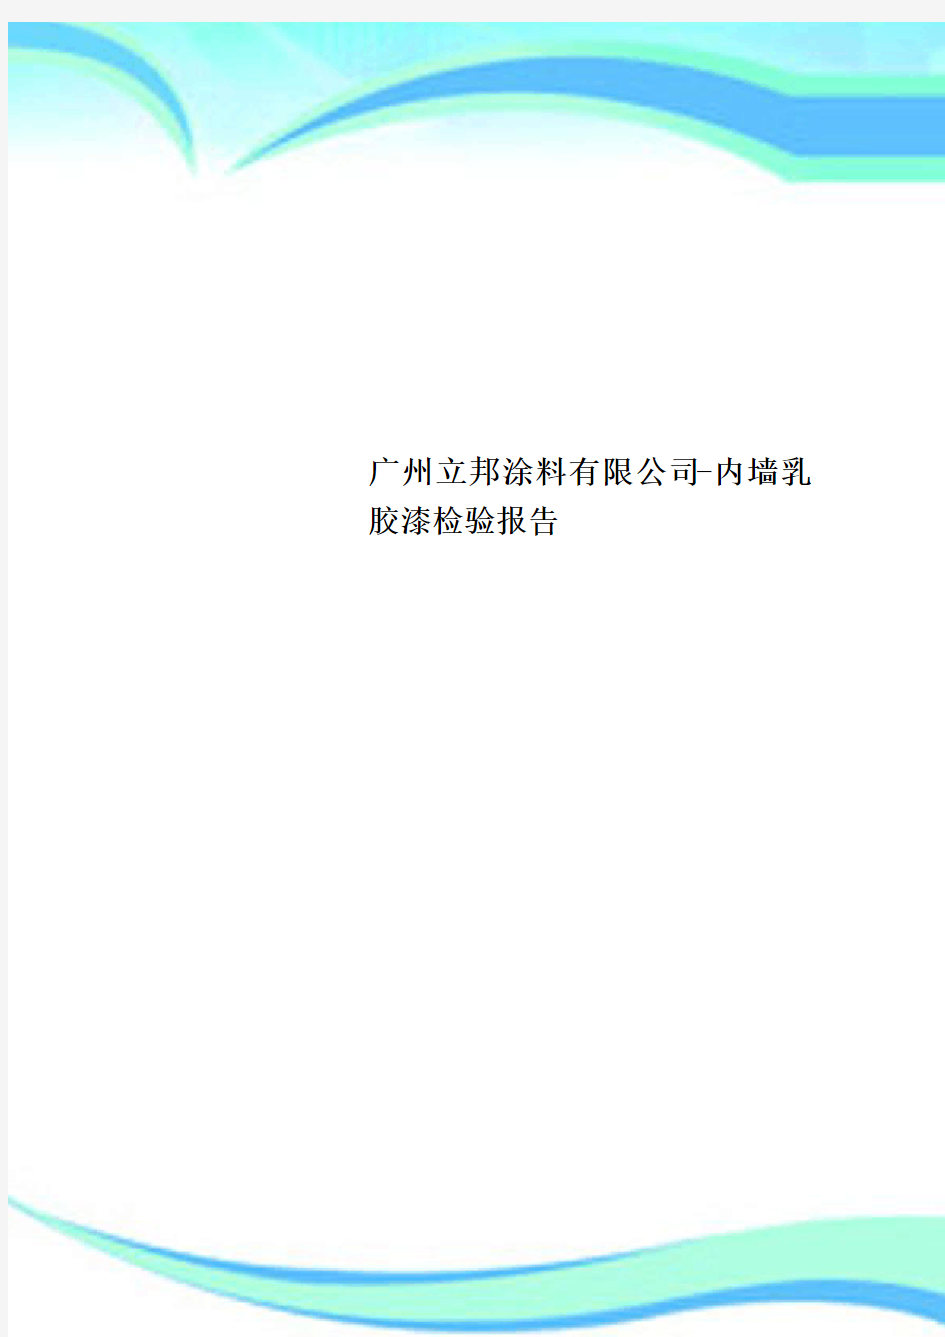 广州立邦涂料有限公司内墙乳胶漆检验报告